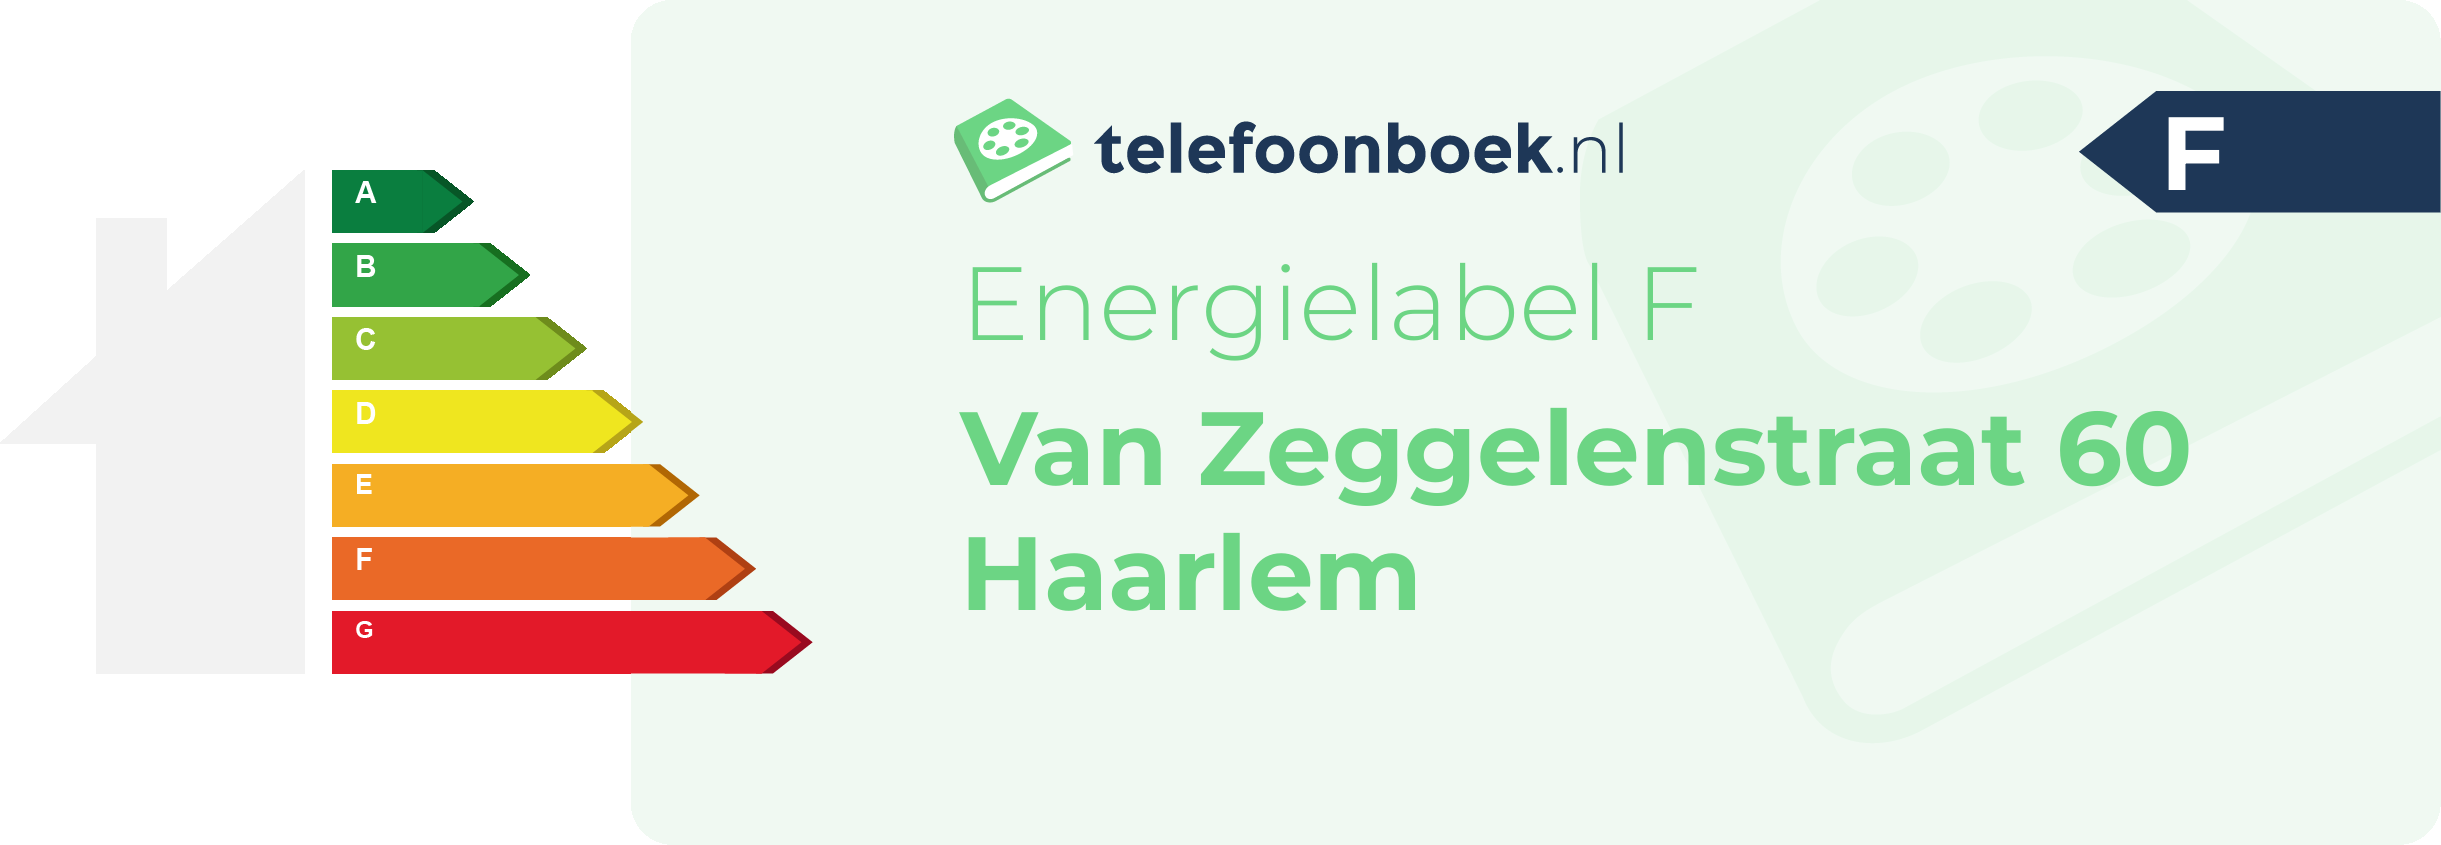 Energielabel Van Zeggelenstraat 60 Haarlem